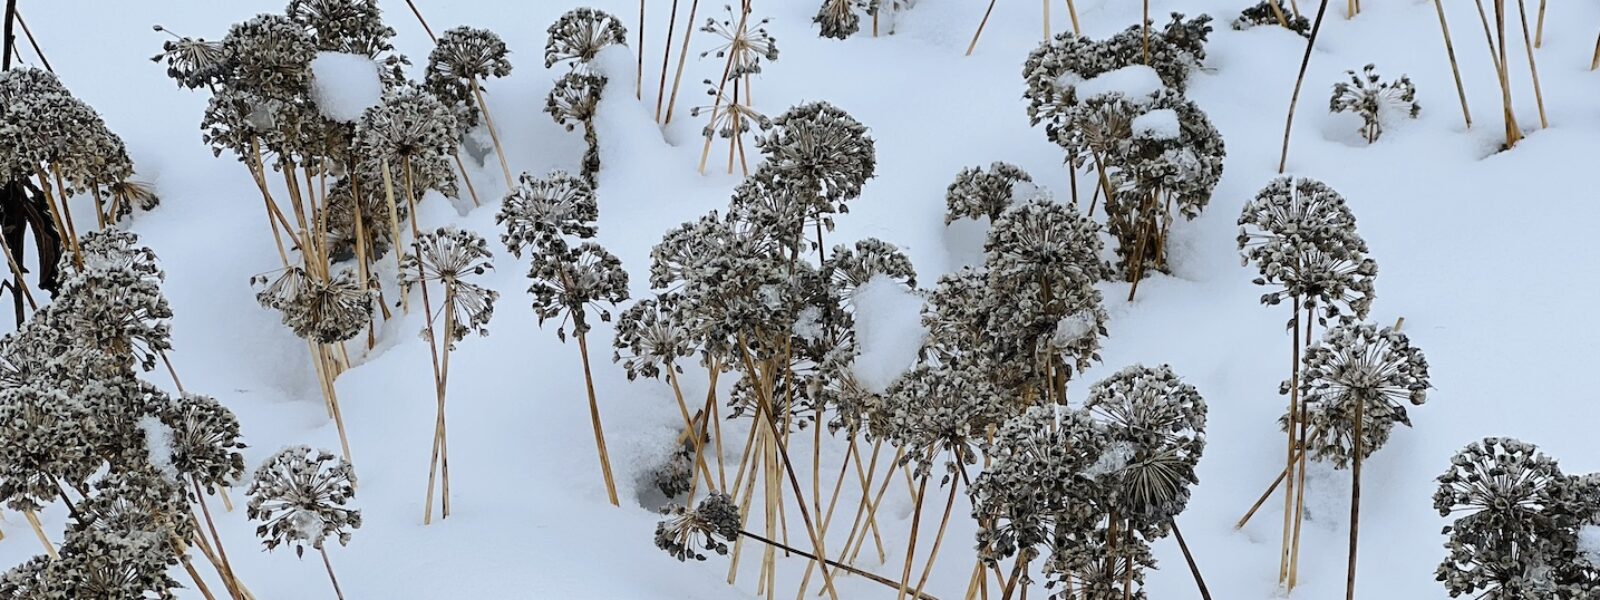 flower seed heads in snowy landscape